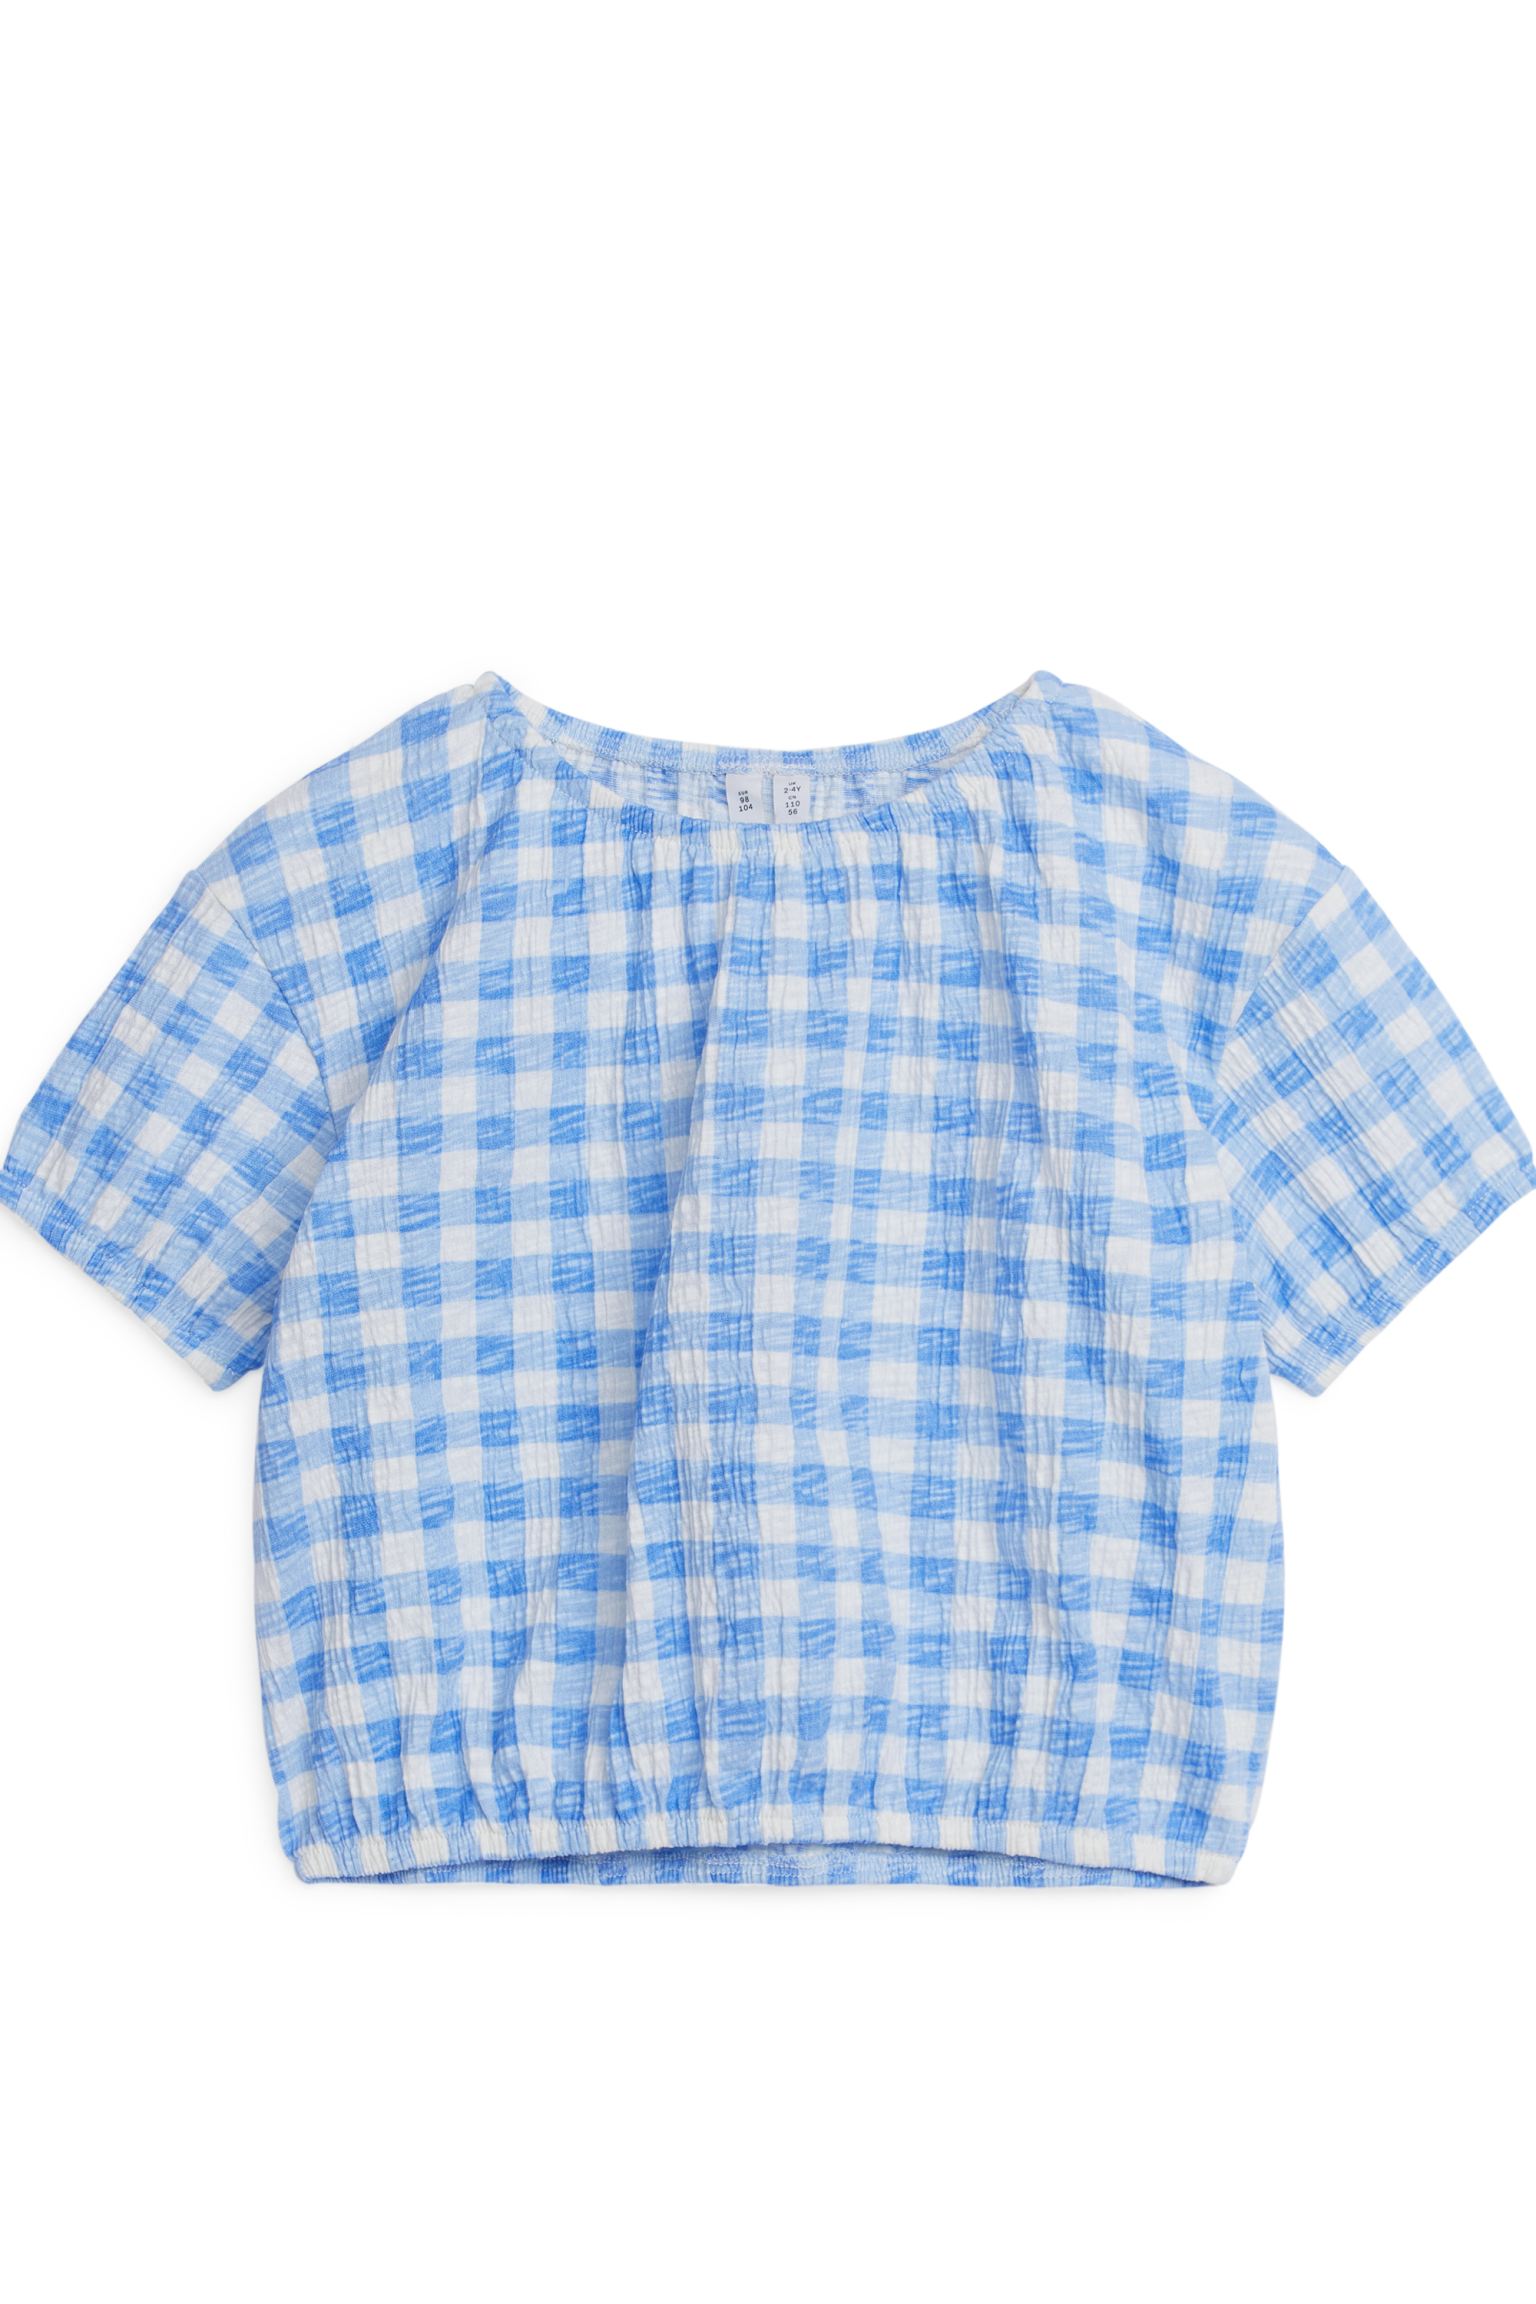 Структурированная блузка ARKET для девочек 110/116 Белый синий (доставка из-за рубежа)